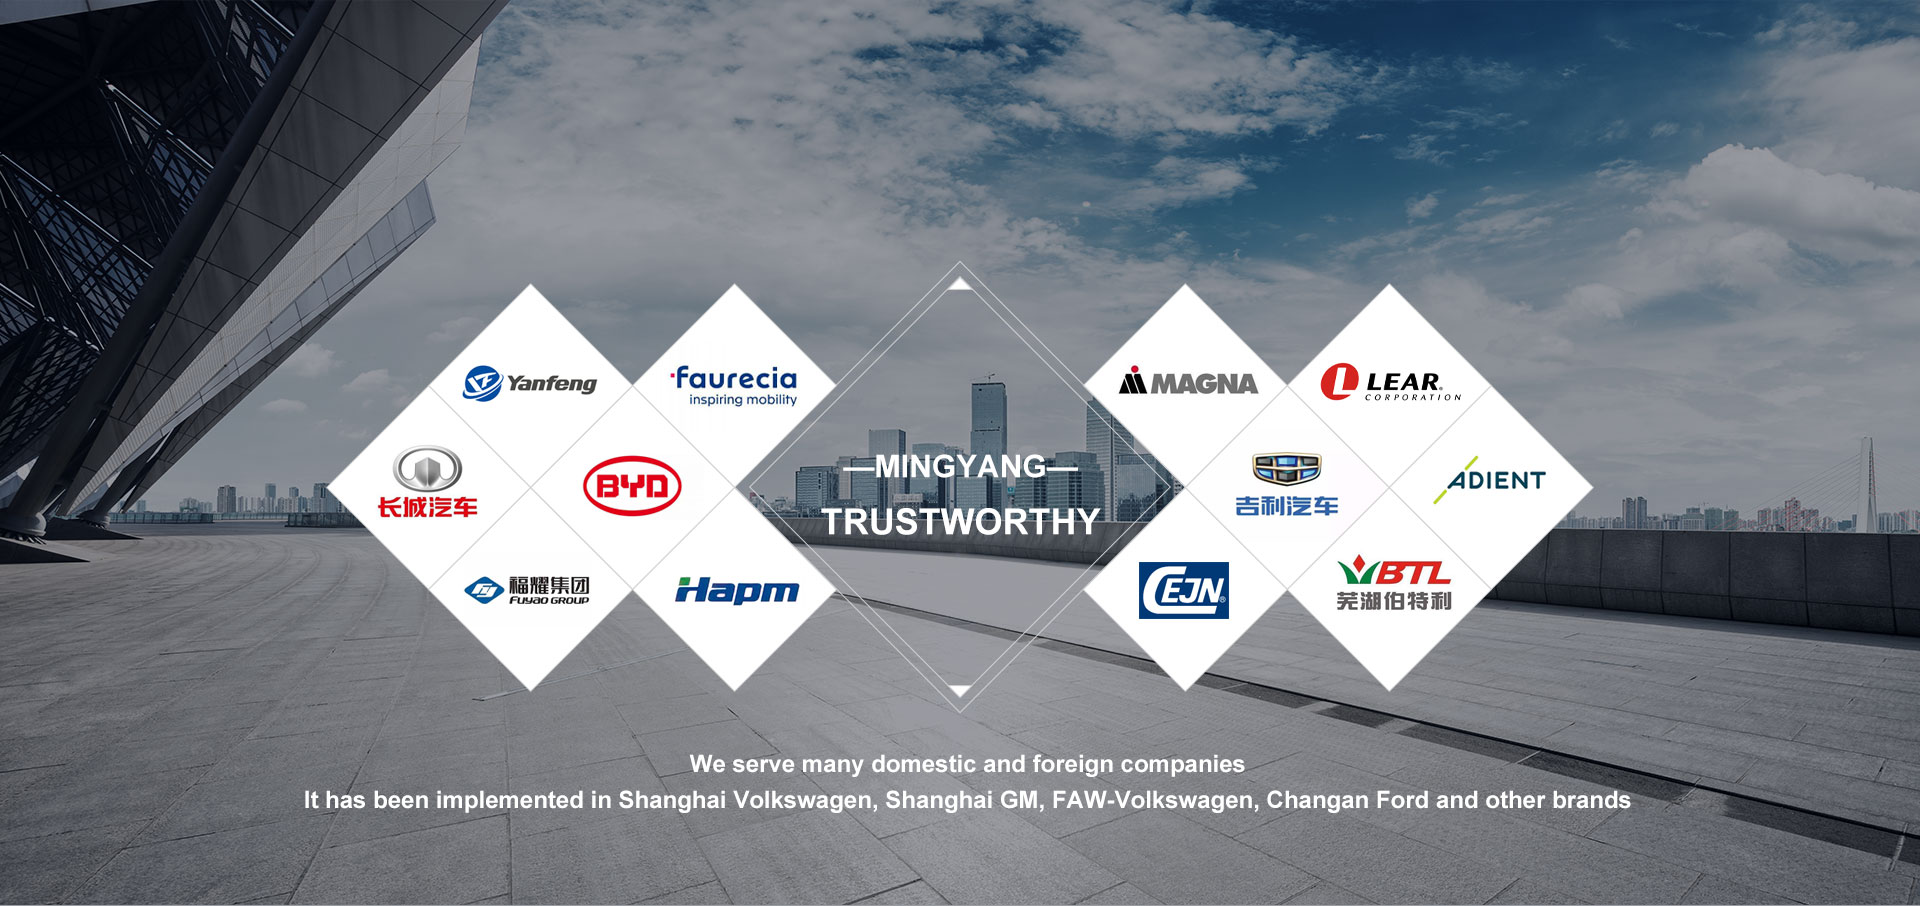 Mingyang Tech is trustworthy